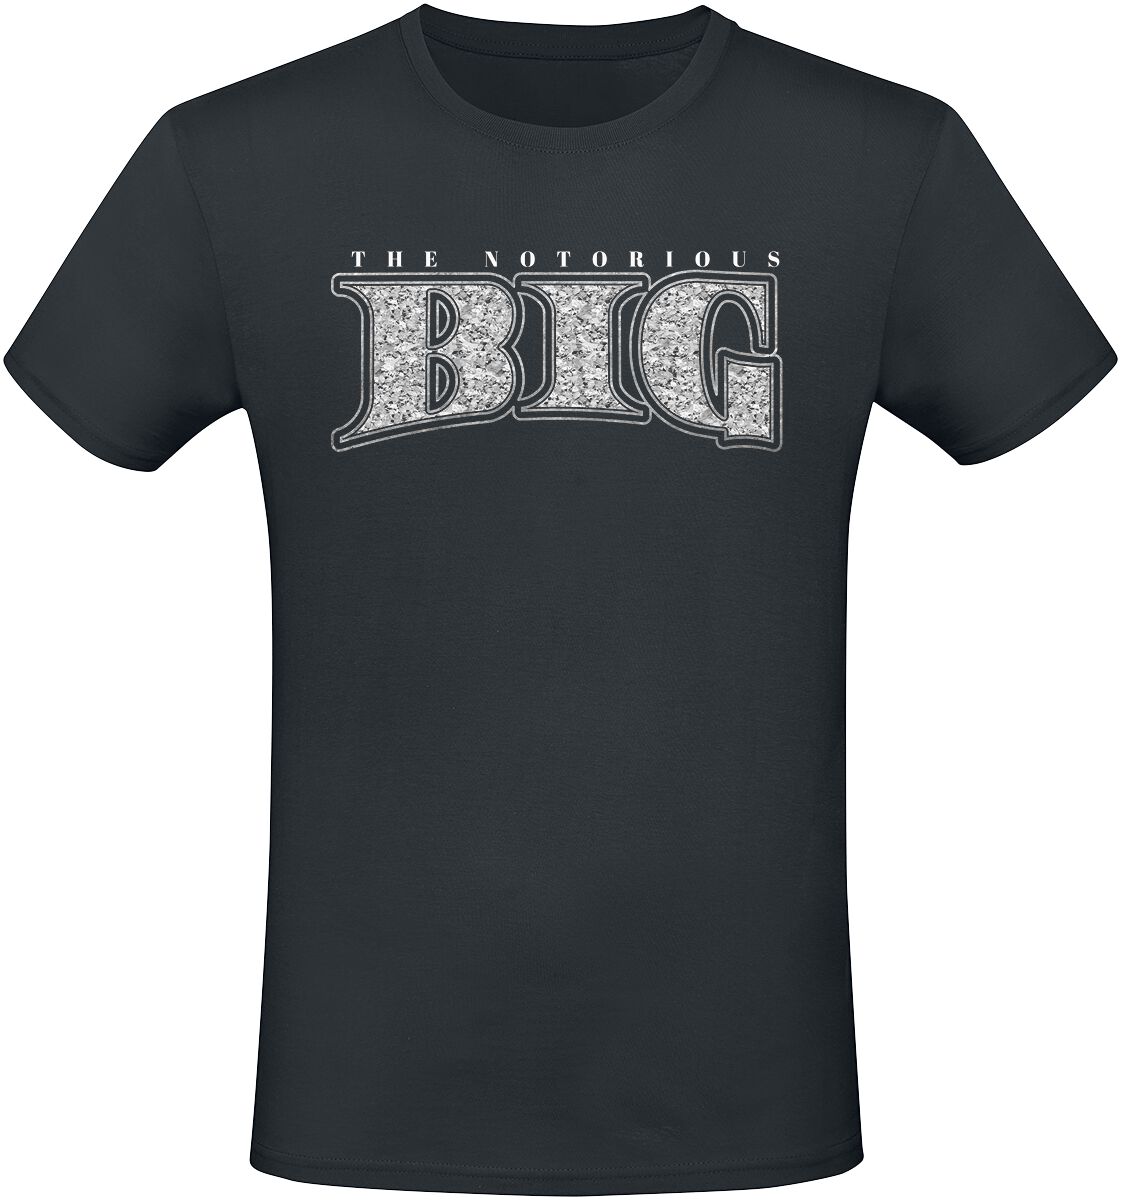 Notorious B.I.G. T-Shirt - Small Logo - S bis XXL - für Männer - Größe S - schwarz  - Lizenziertes Merchandise!